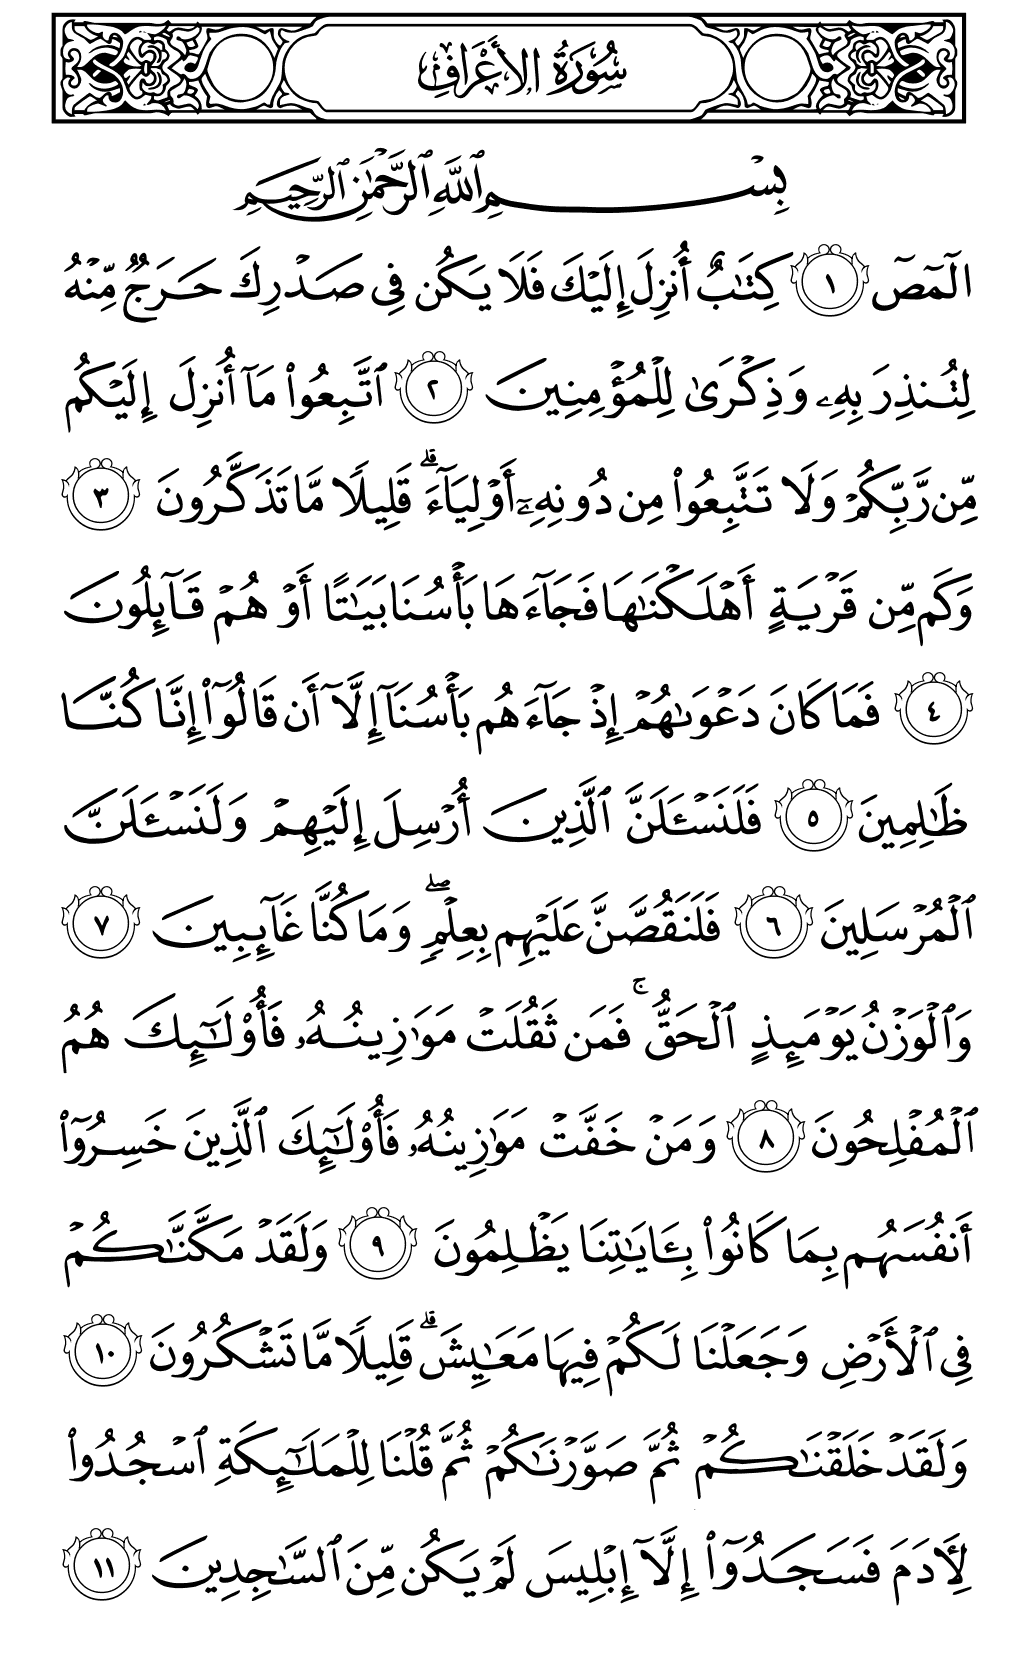 الصفحة رقم 151 من القرآن الكريم